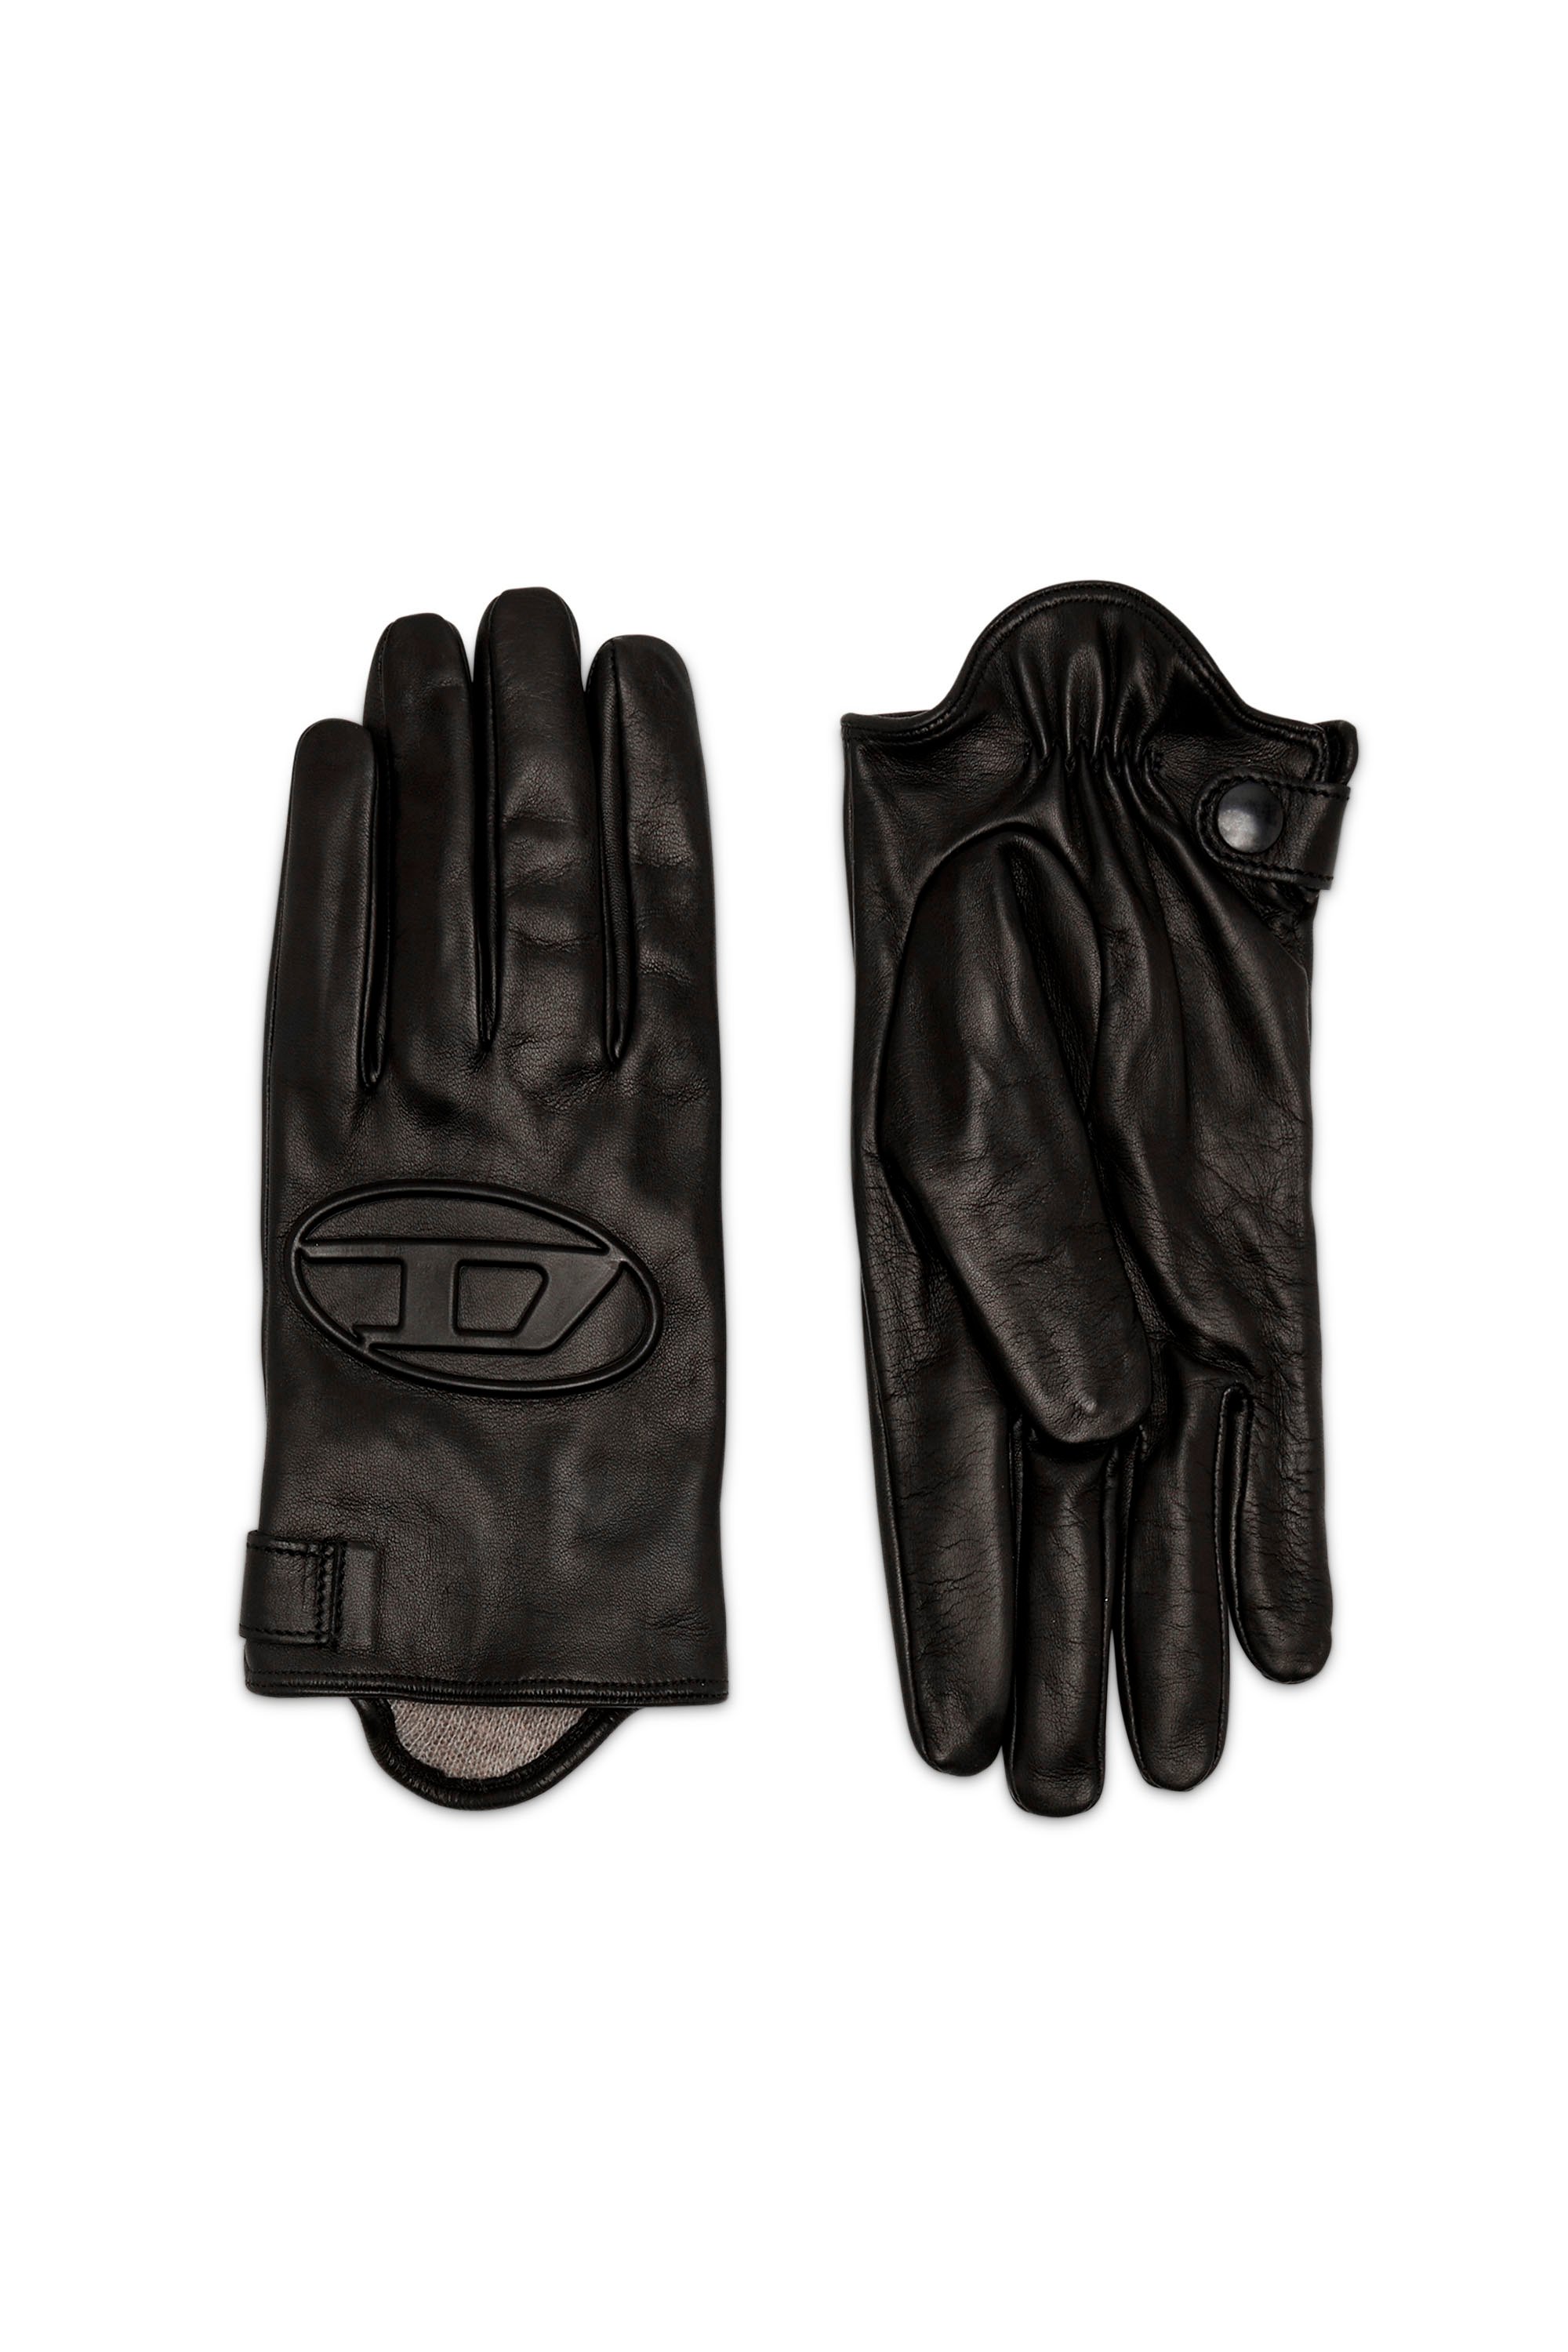 G-REIES, Black - Gloves